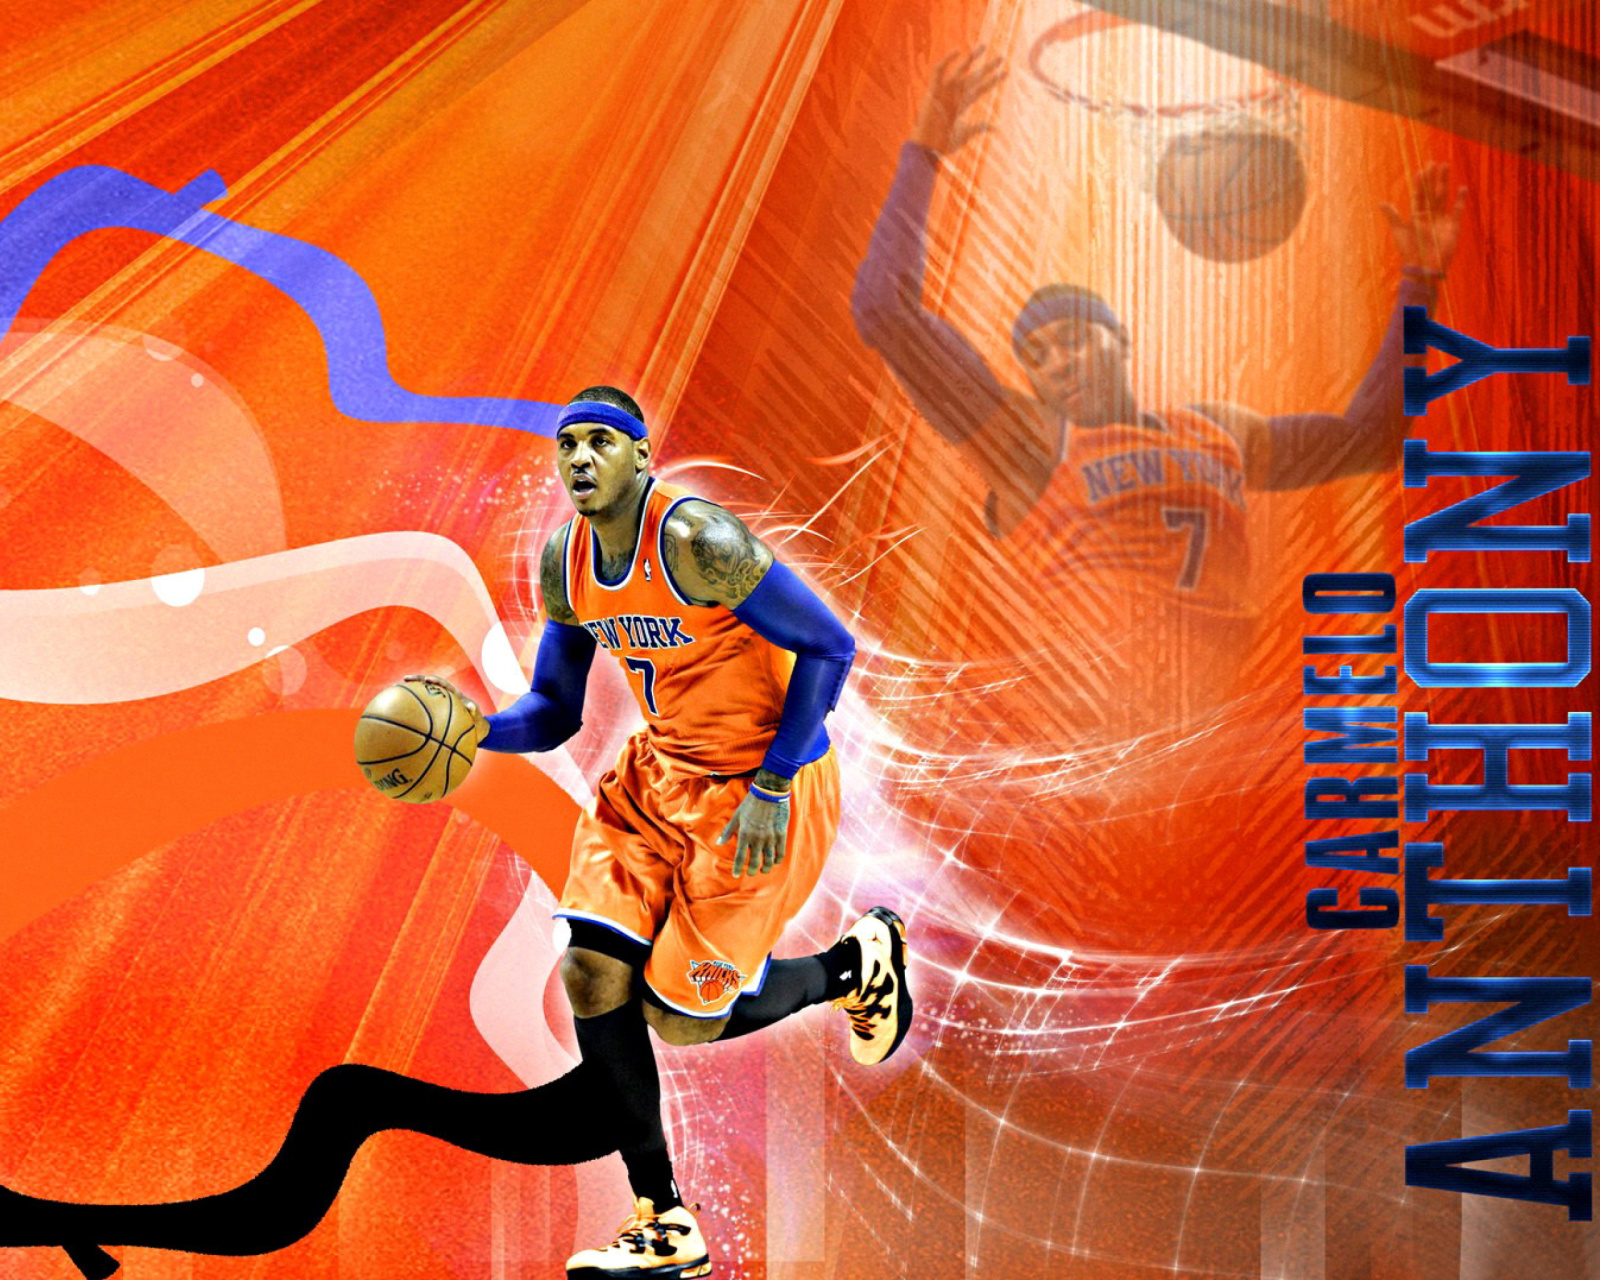 Sfondi Carmelo Anthony NBA Player 1600x1280